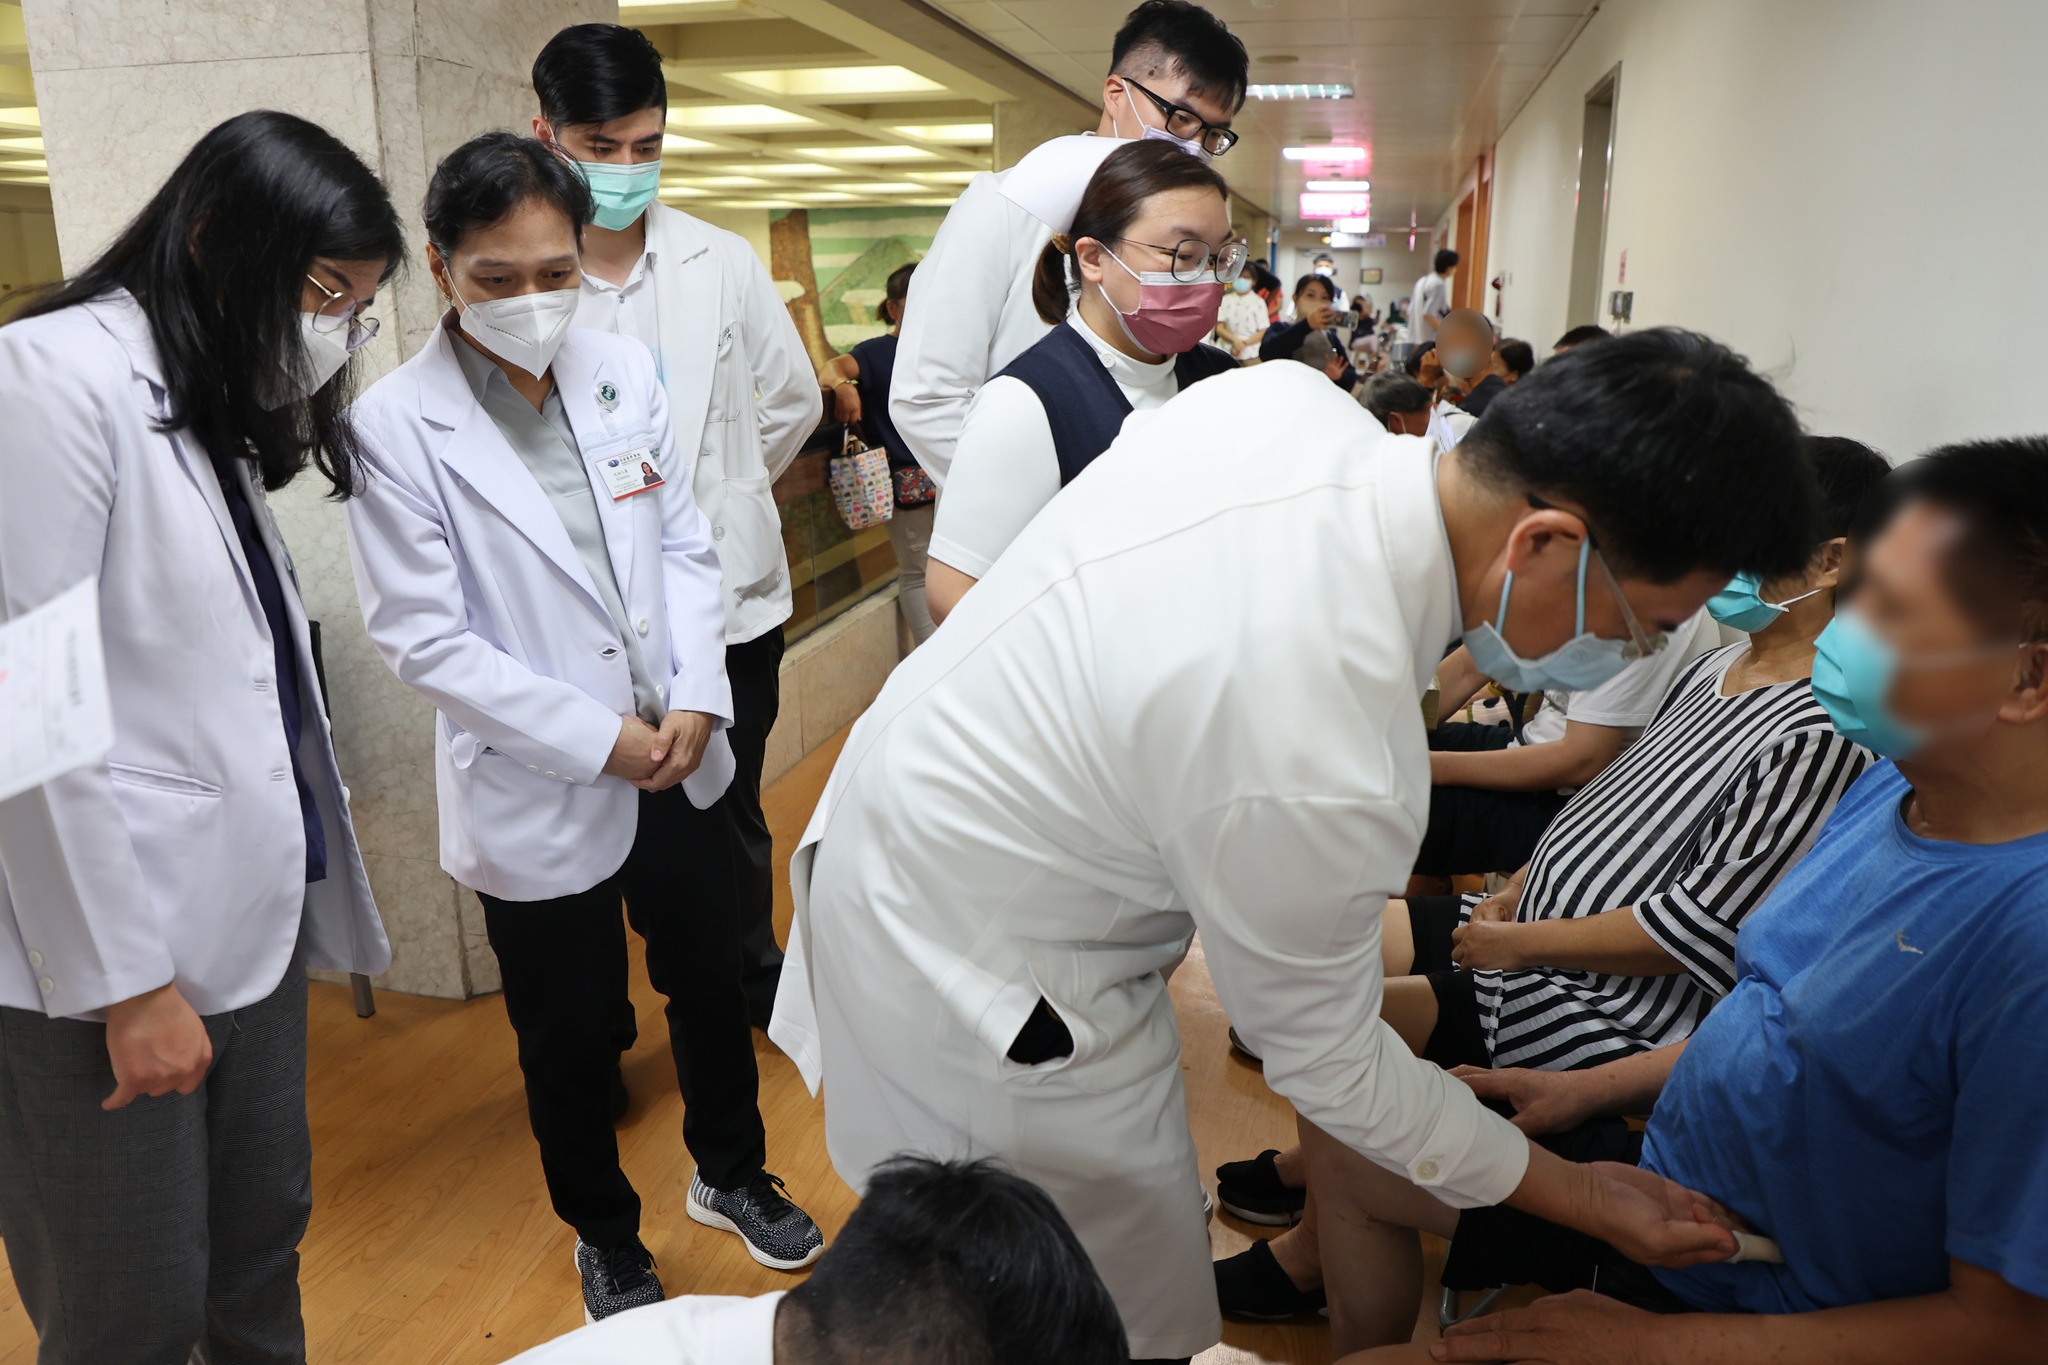 印尼醫師團來台交流 參訪花蓮慈濟醫院學習中西醫合療技術 